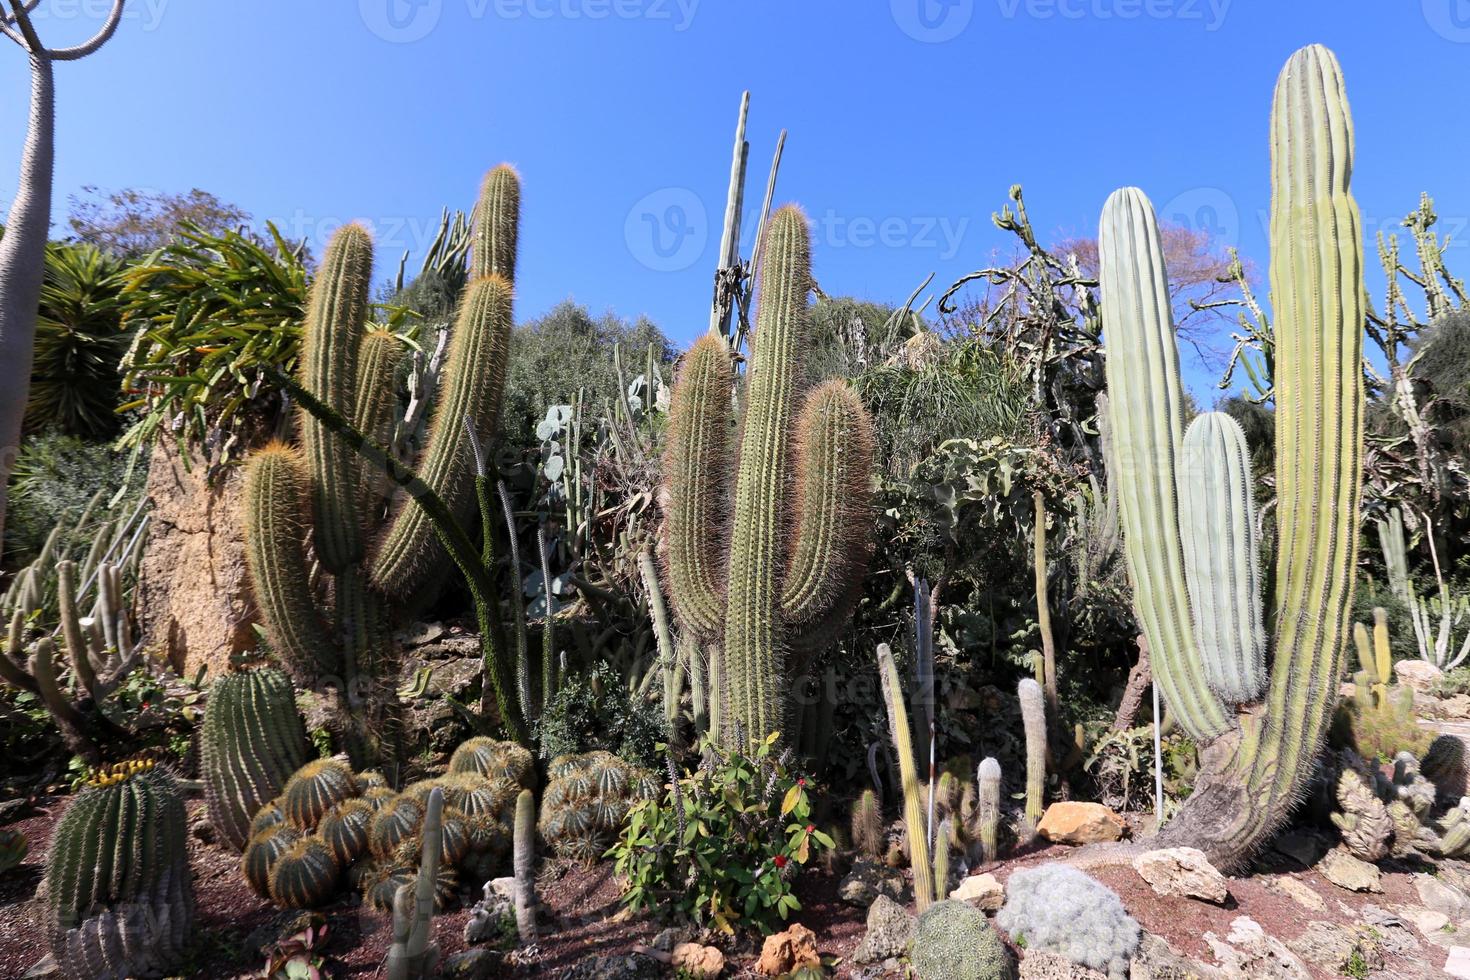 de cactus is groot en stekelig gekweekt in het stadspark. foto